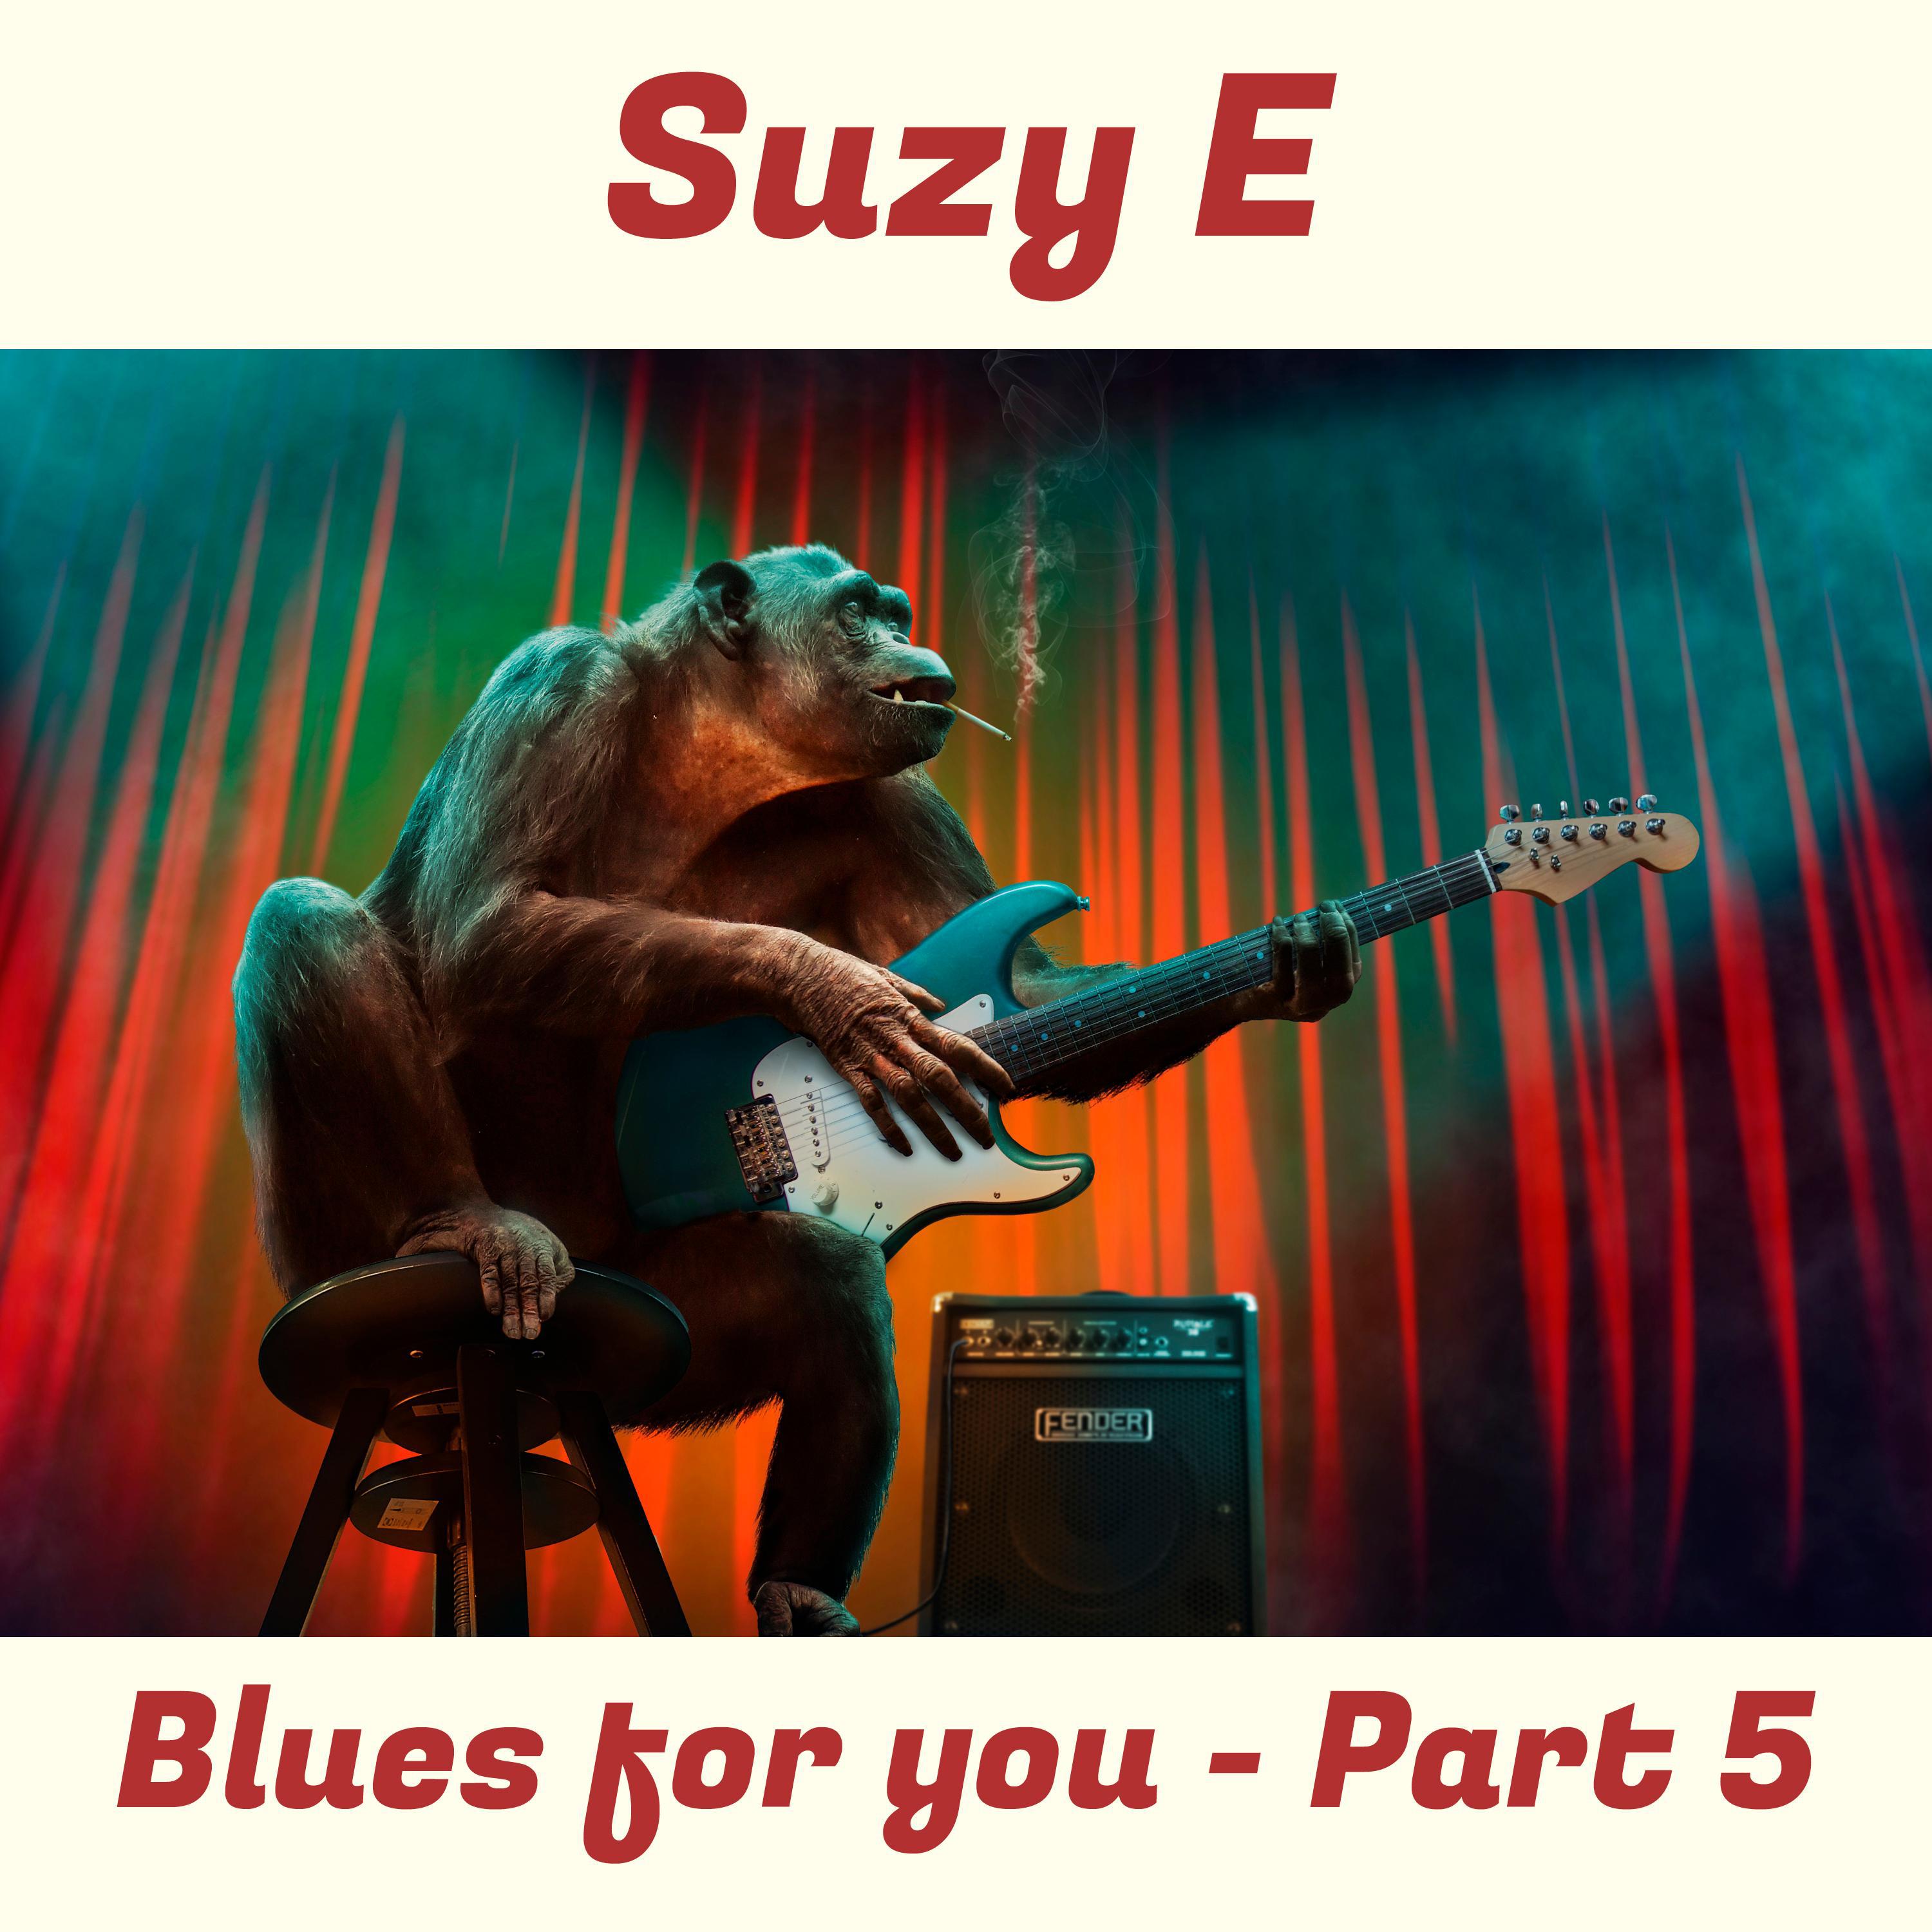 Suzy E - Wrong blues